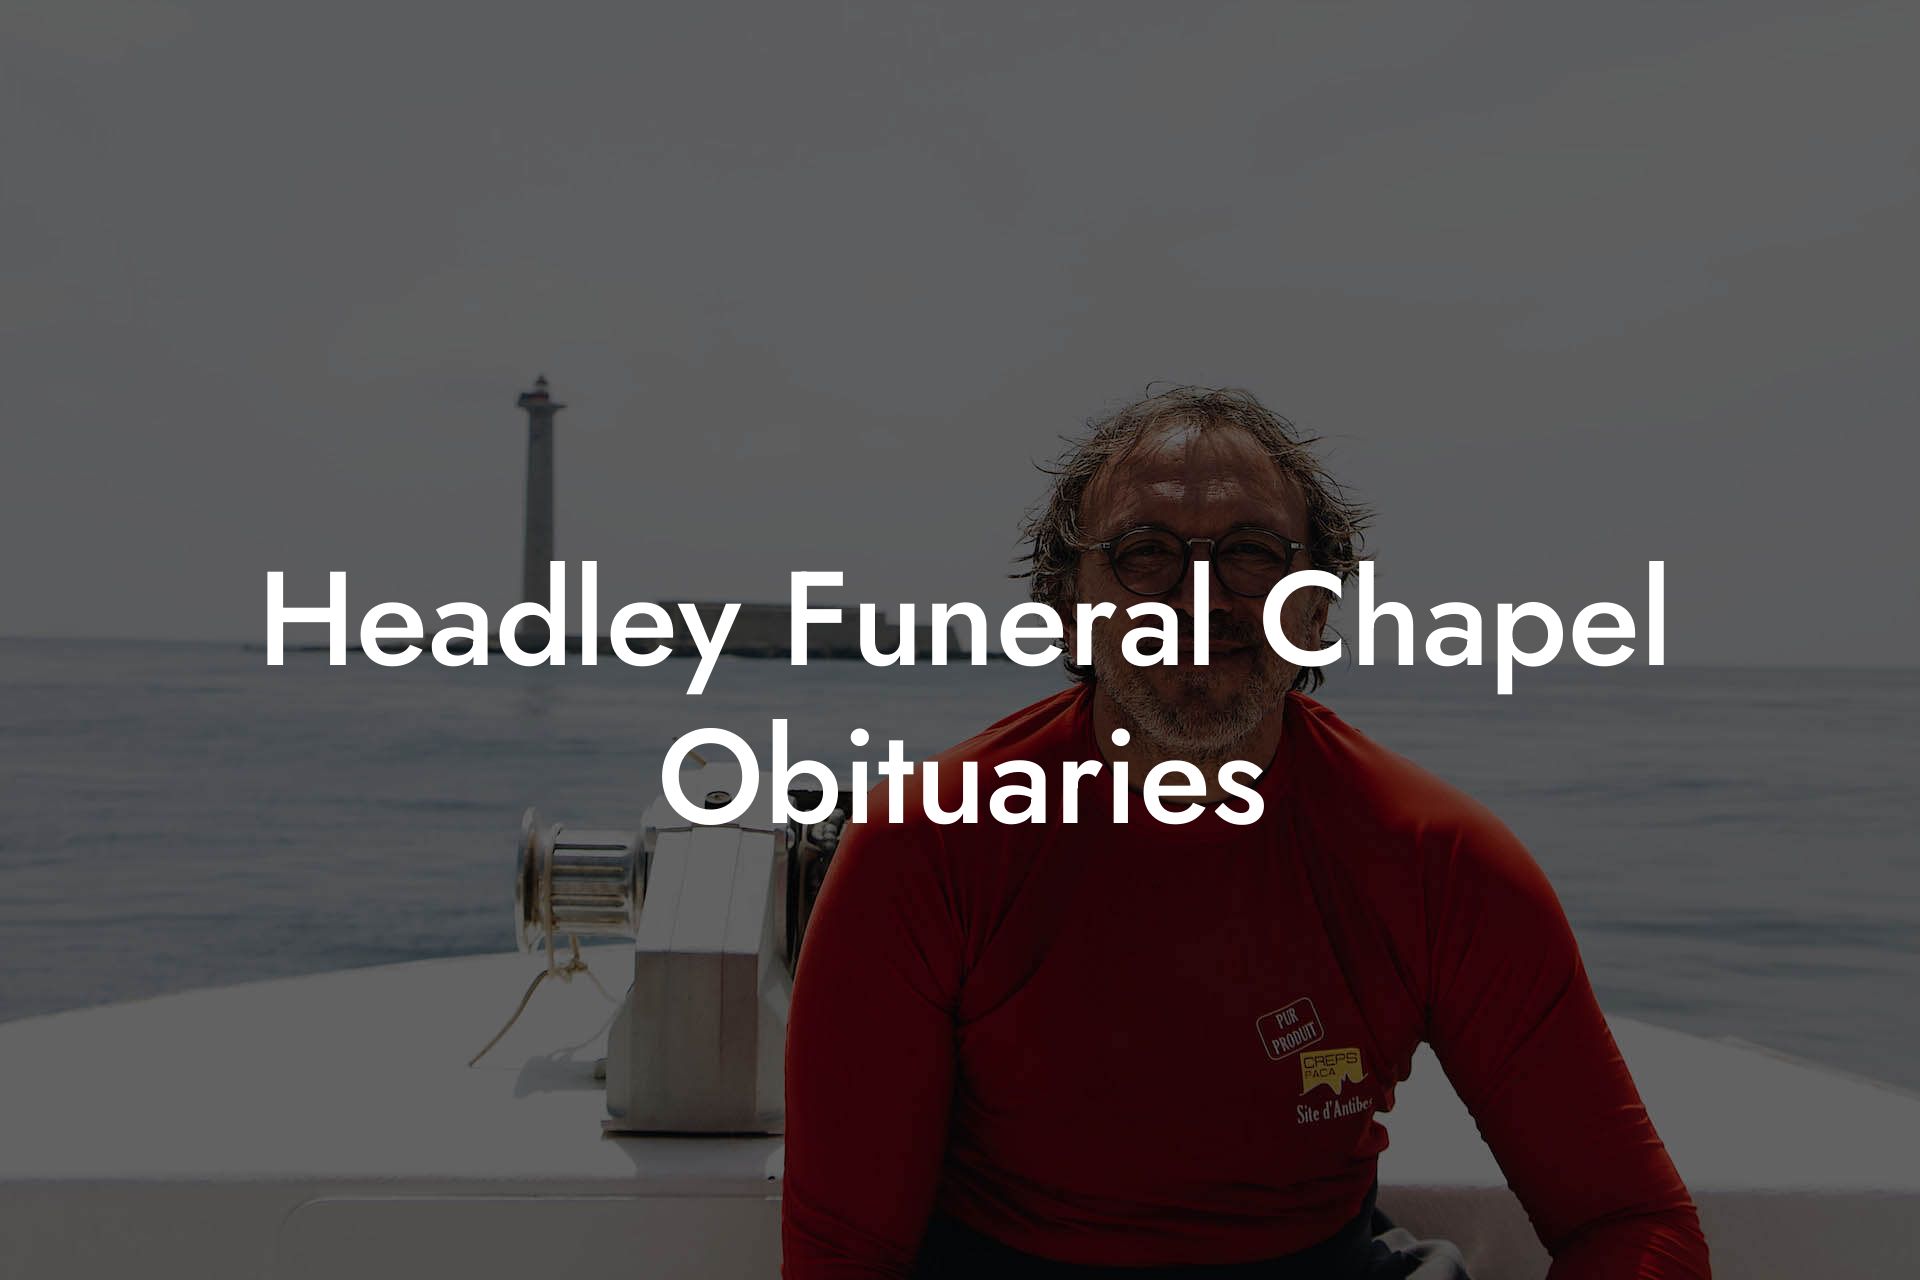 Headley Funeral Chapel Obituaries